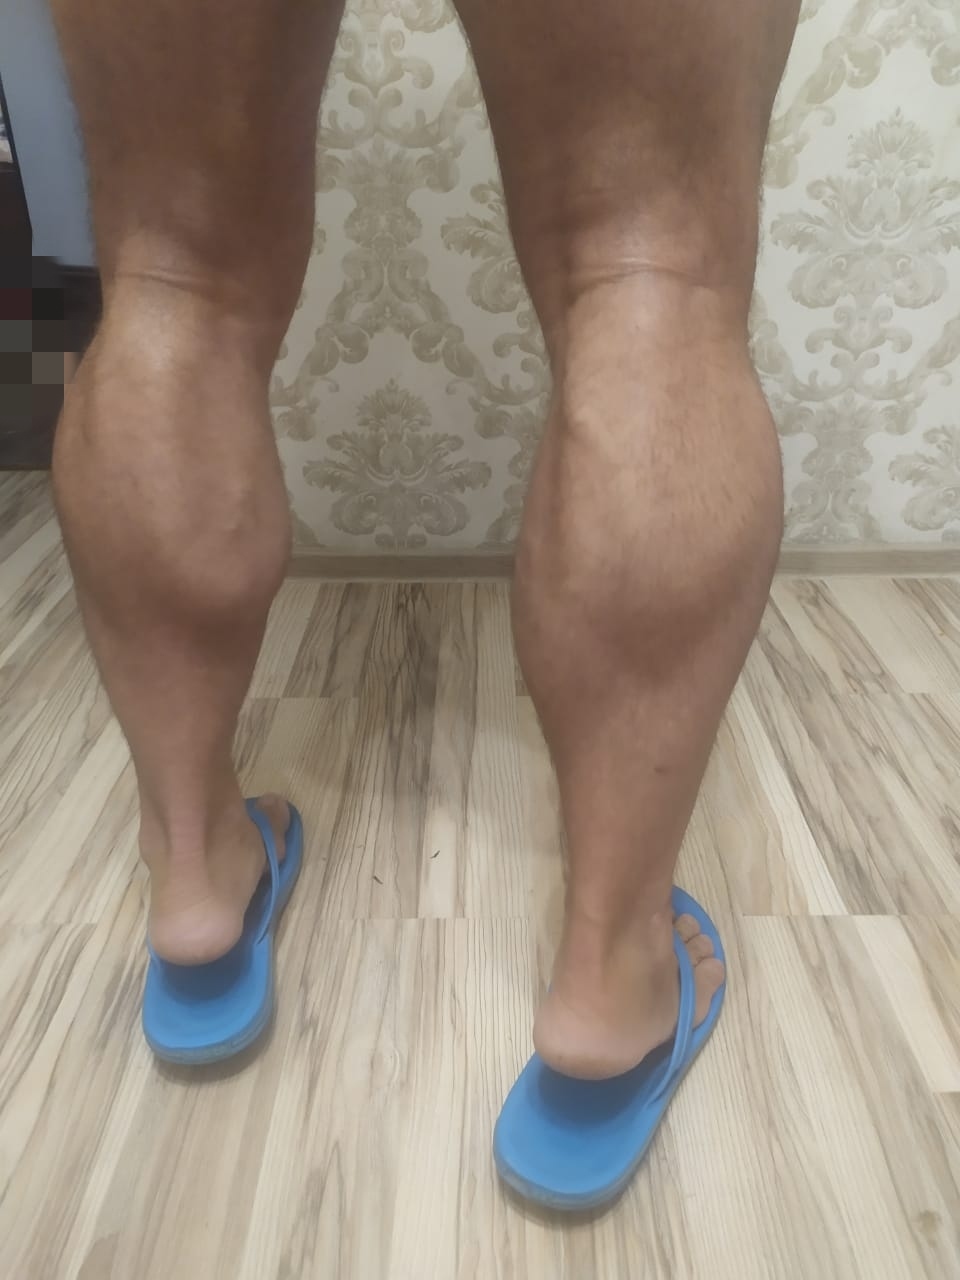 Фото Сексуальные ножки, более 99 качественных бесплатных стоковых фото